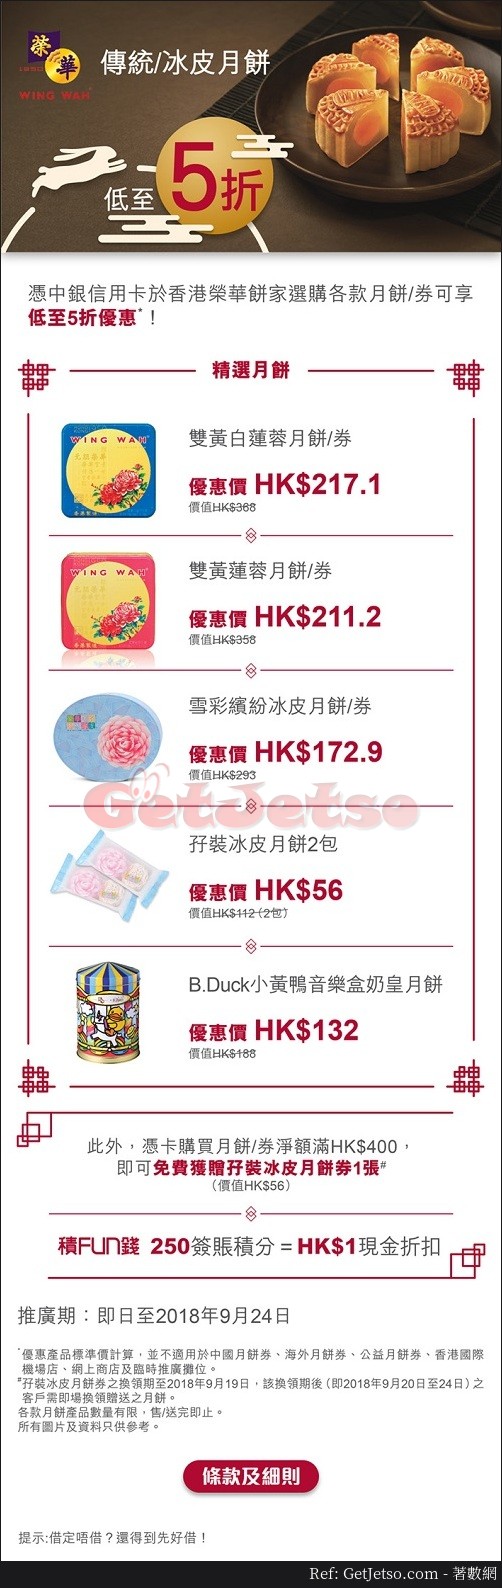 香港榮華餅家傳統/冰皮月餅低至5折優惠@中銀信用卡(至18年9月24日)圖片1